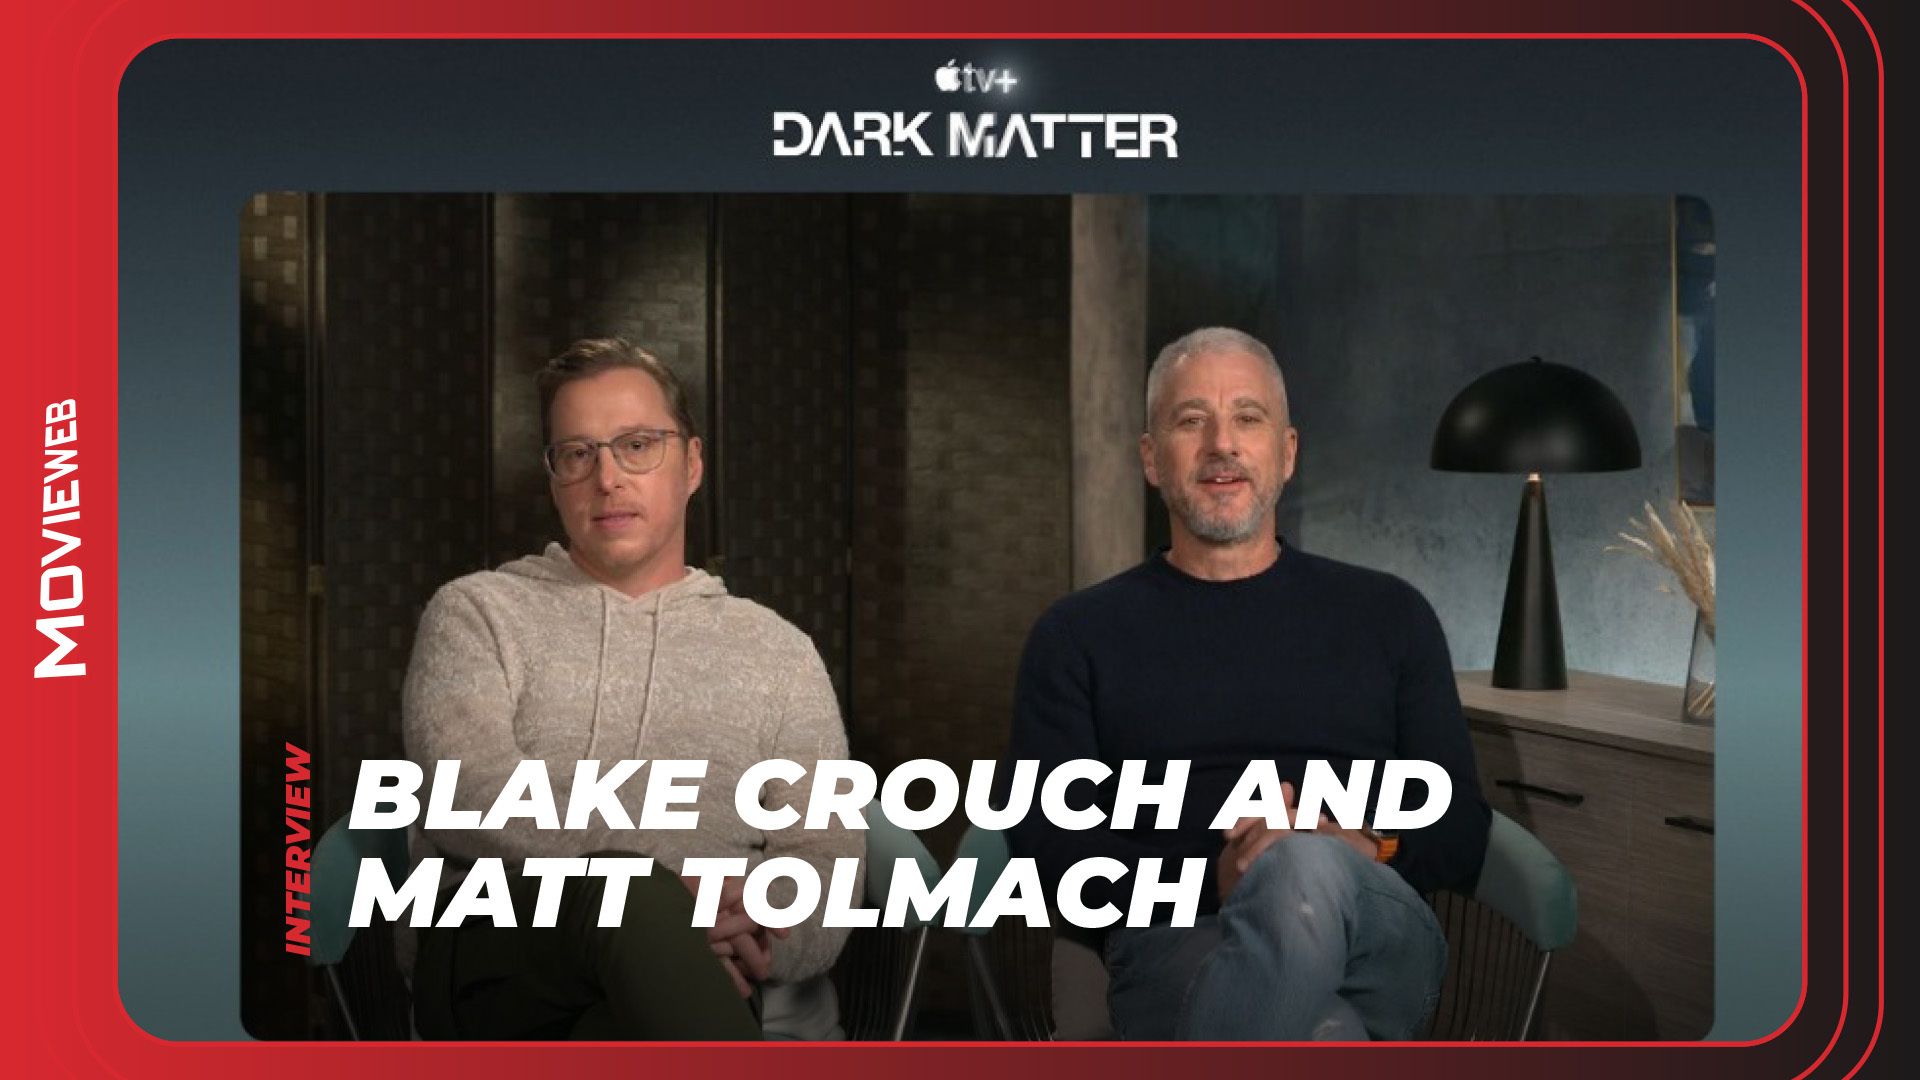 Dark Matter - Blake Crouch and Matt Tolmach